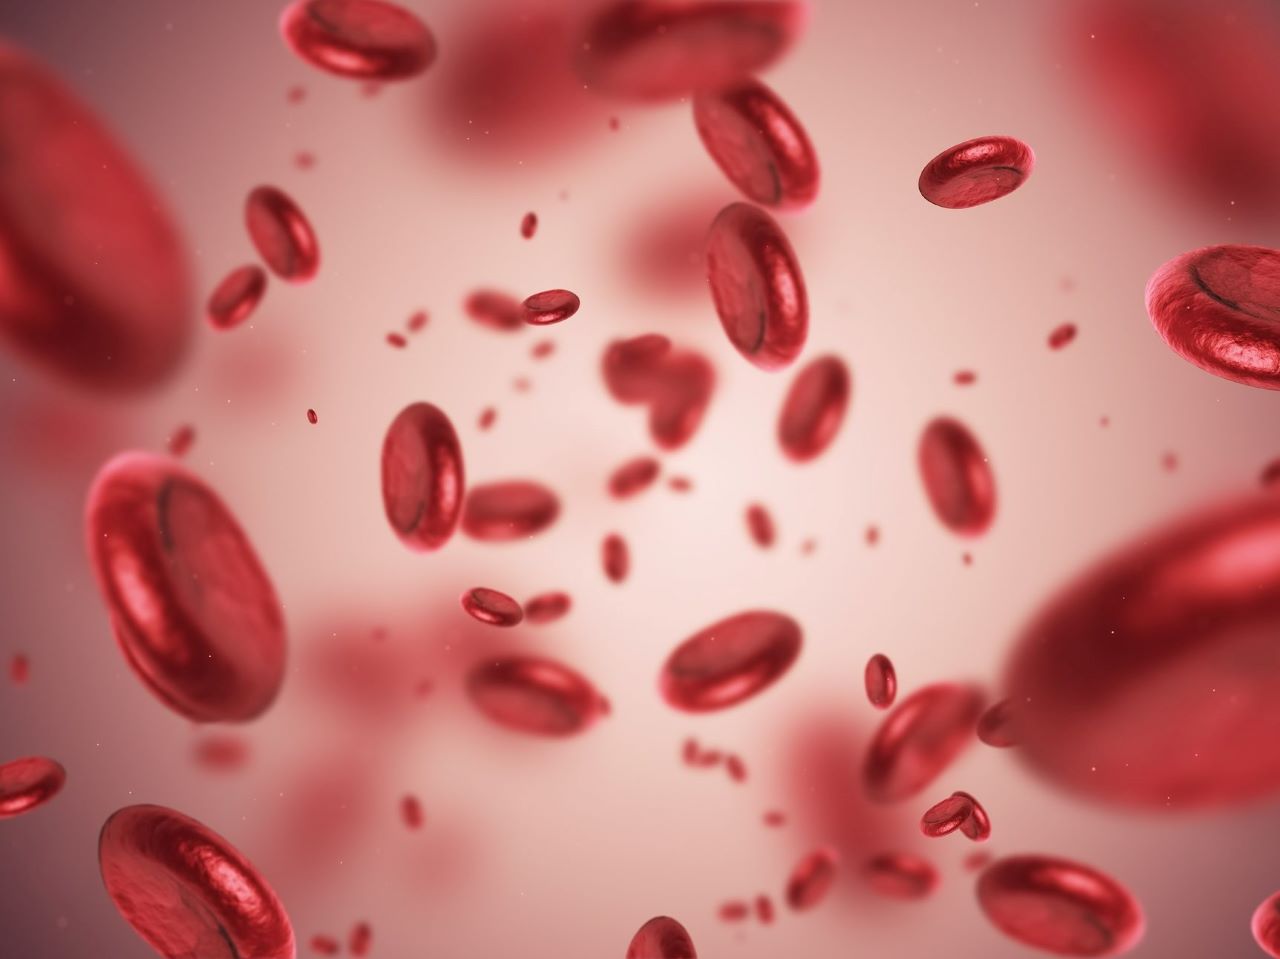 Mức độ thiếu máu ở trẻ em có thể dự đoán qua các chỉ số hồng cầu và tỉ lệ huyết sắc tố Hematocrit không?